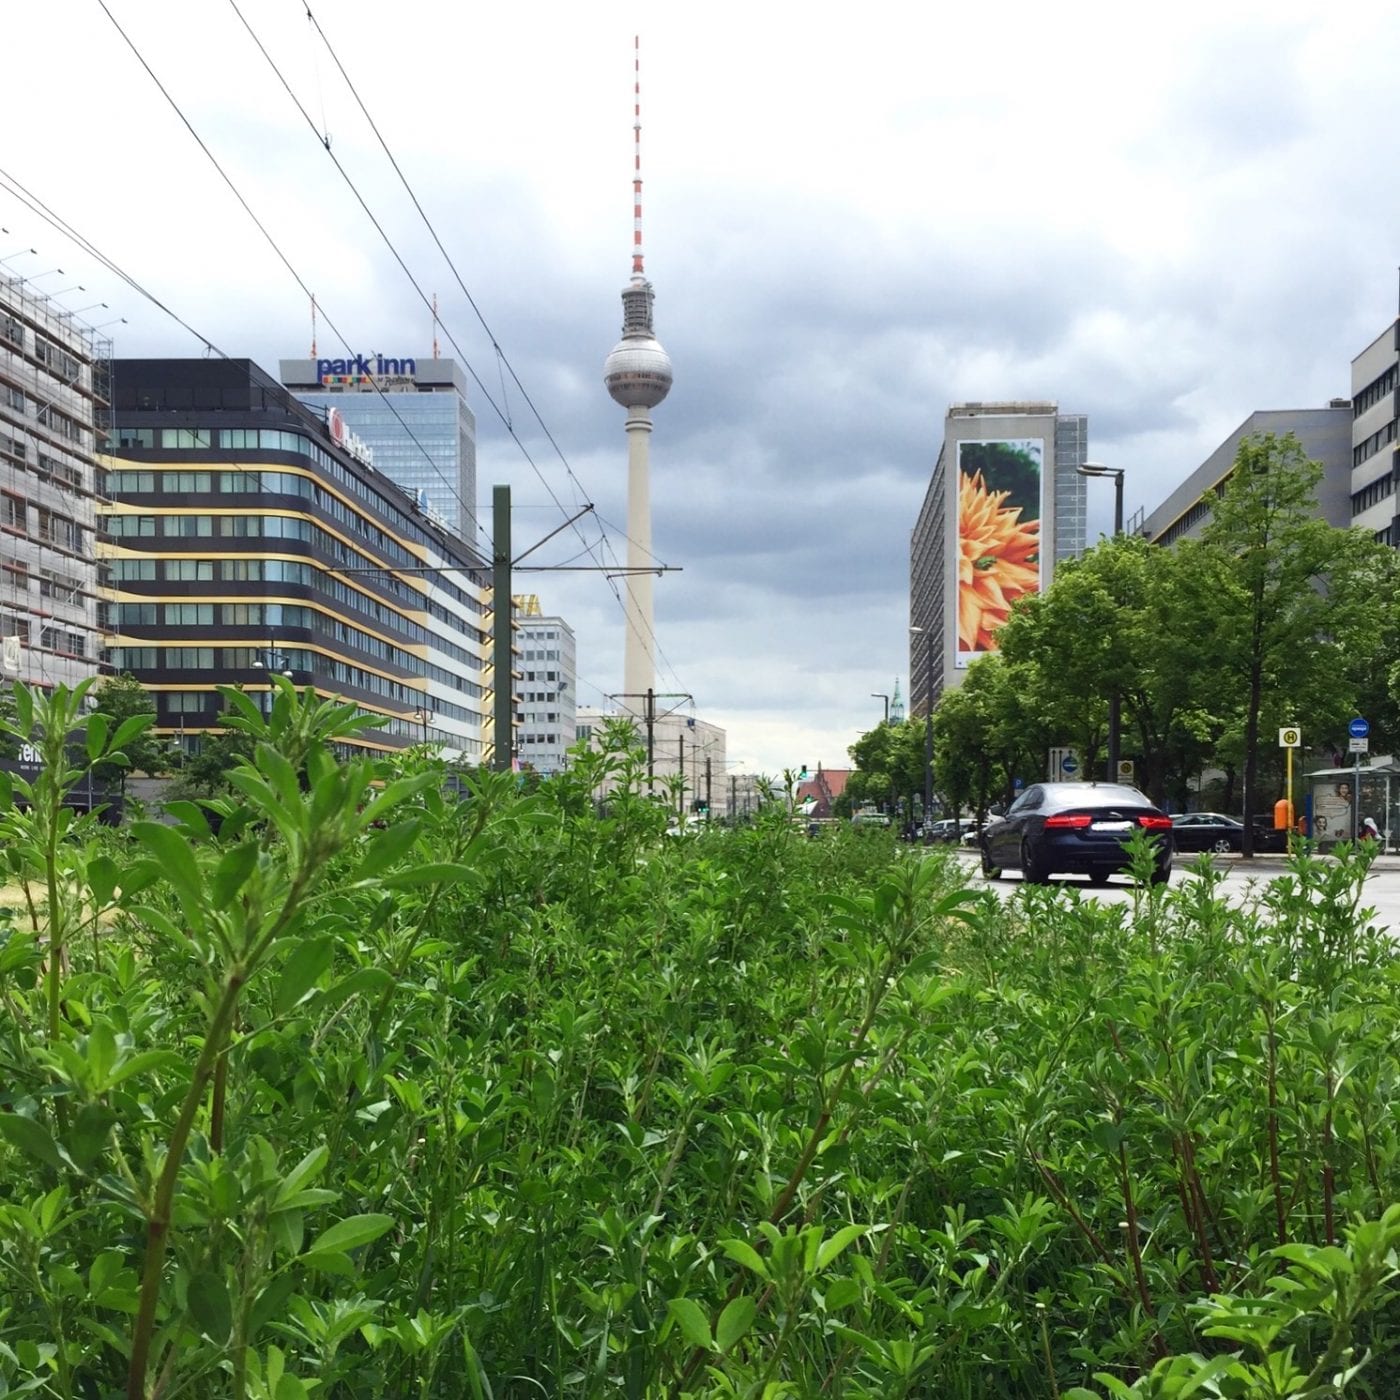 Berlin-Mitte: Blick in die Karl-Liebknecht-Straße Richtung Alexanderplatz, im Hintergrund der Berliner Fernsehturm (Foto: Eric Sturm)